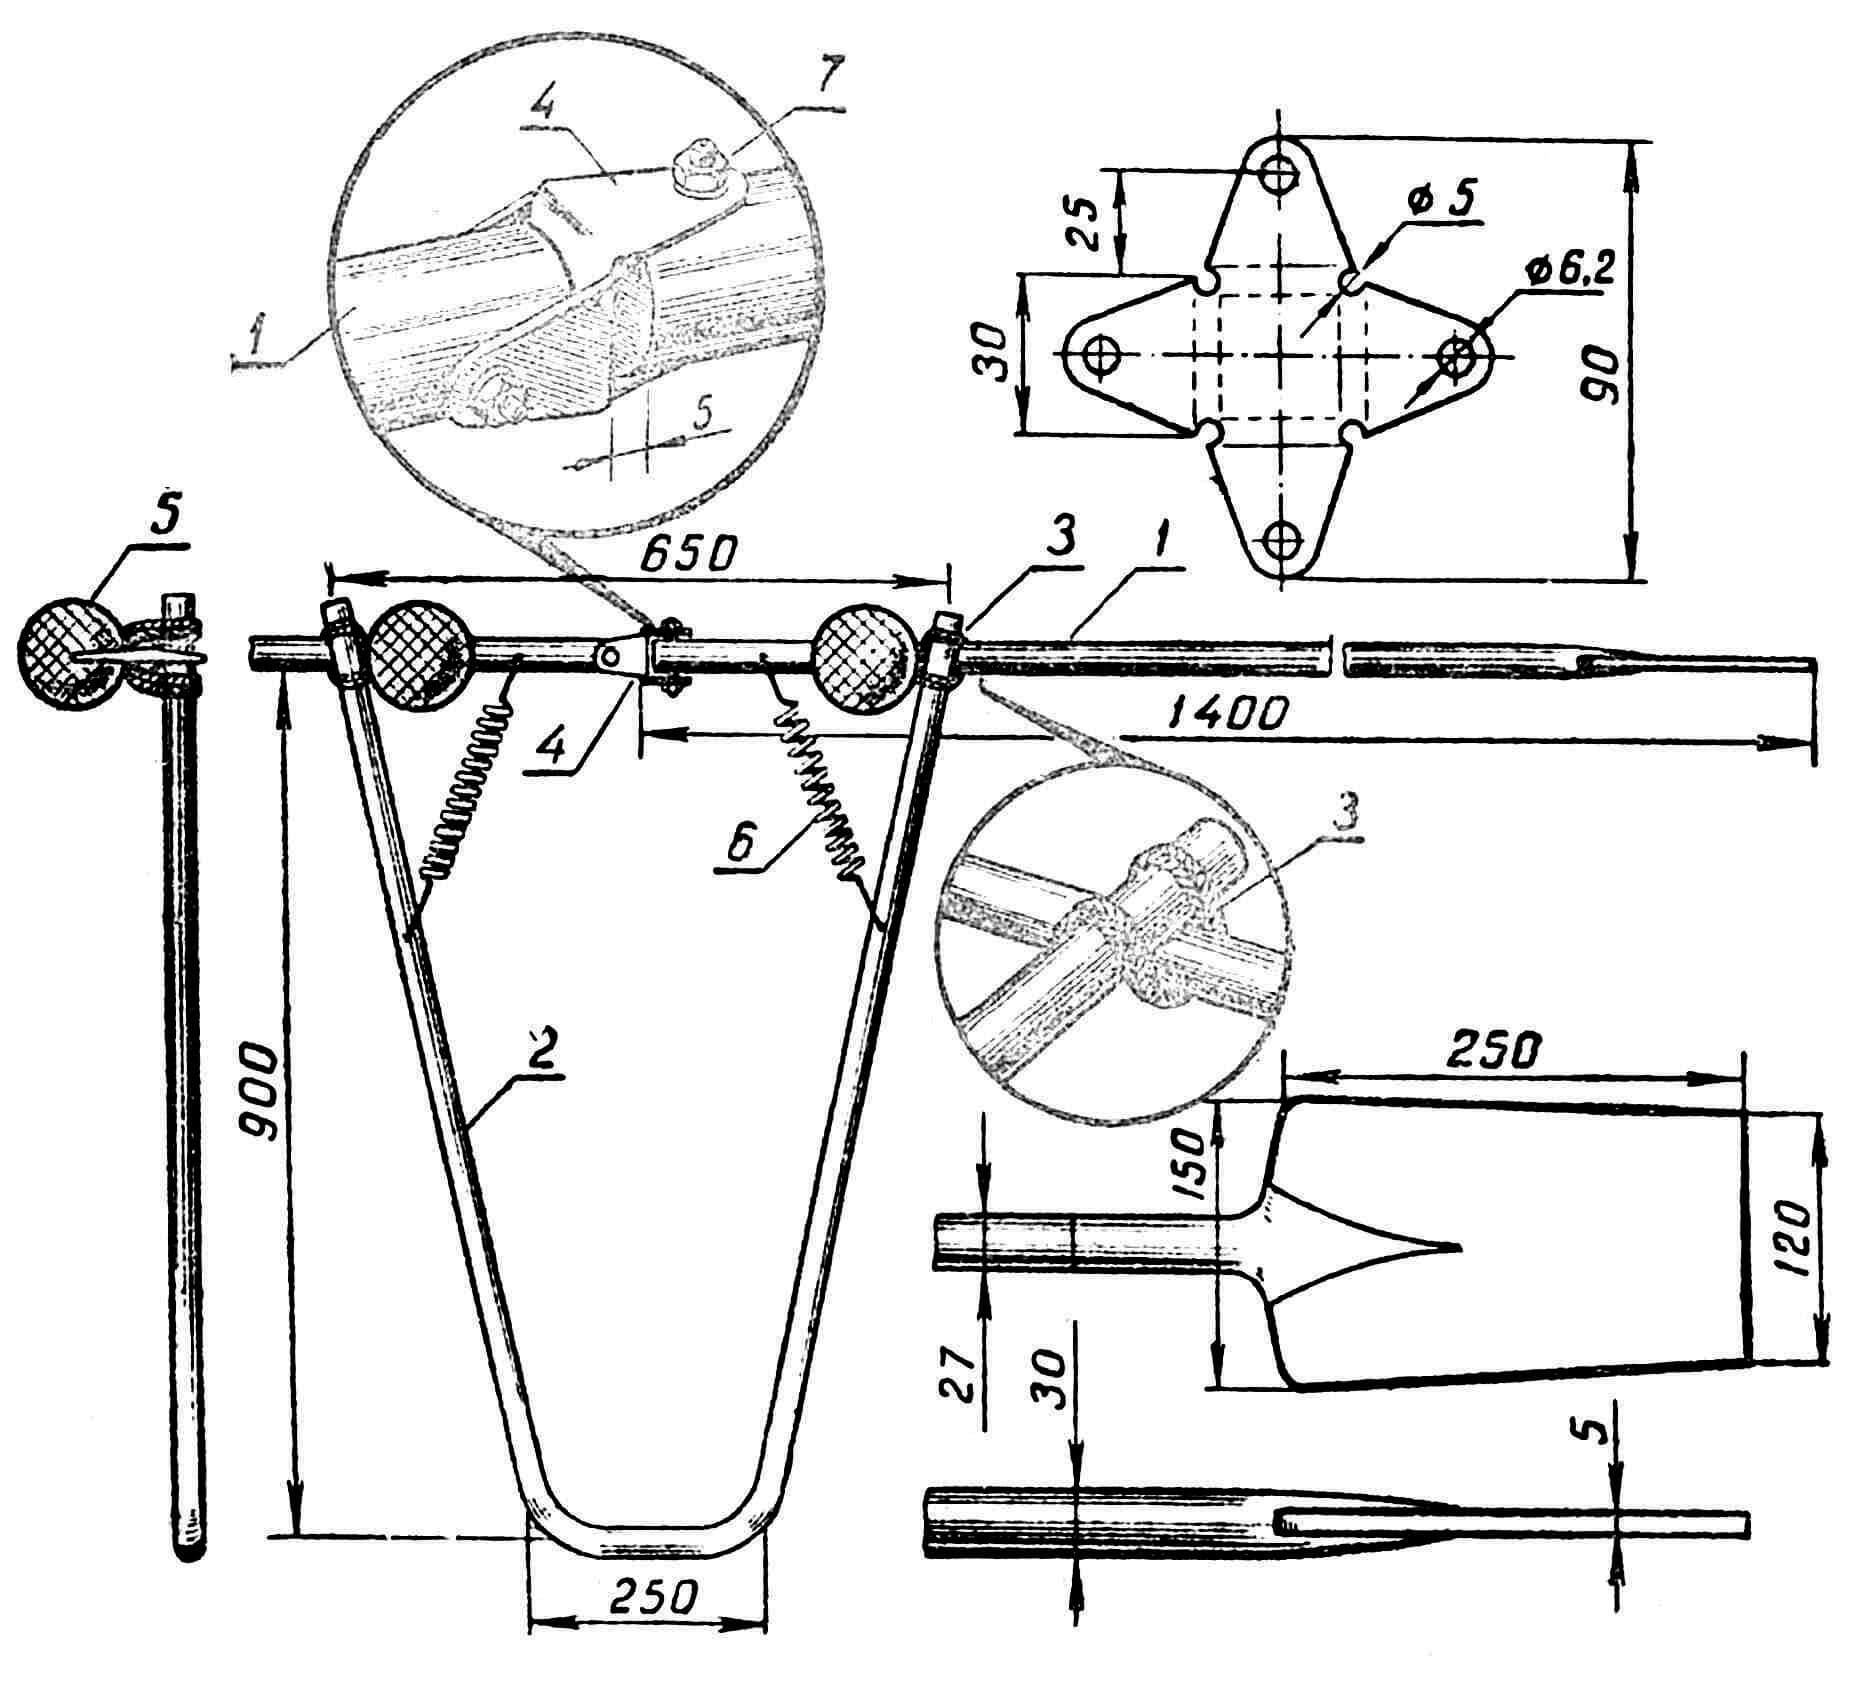 Аппарат для гребли ногами: 1 — весло; 2 — рама; 3 — шнур; 4 — карданный шарнир; 5 — мяч ø 150 мм; 6 — пружина усилием 6 кг.